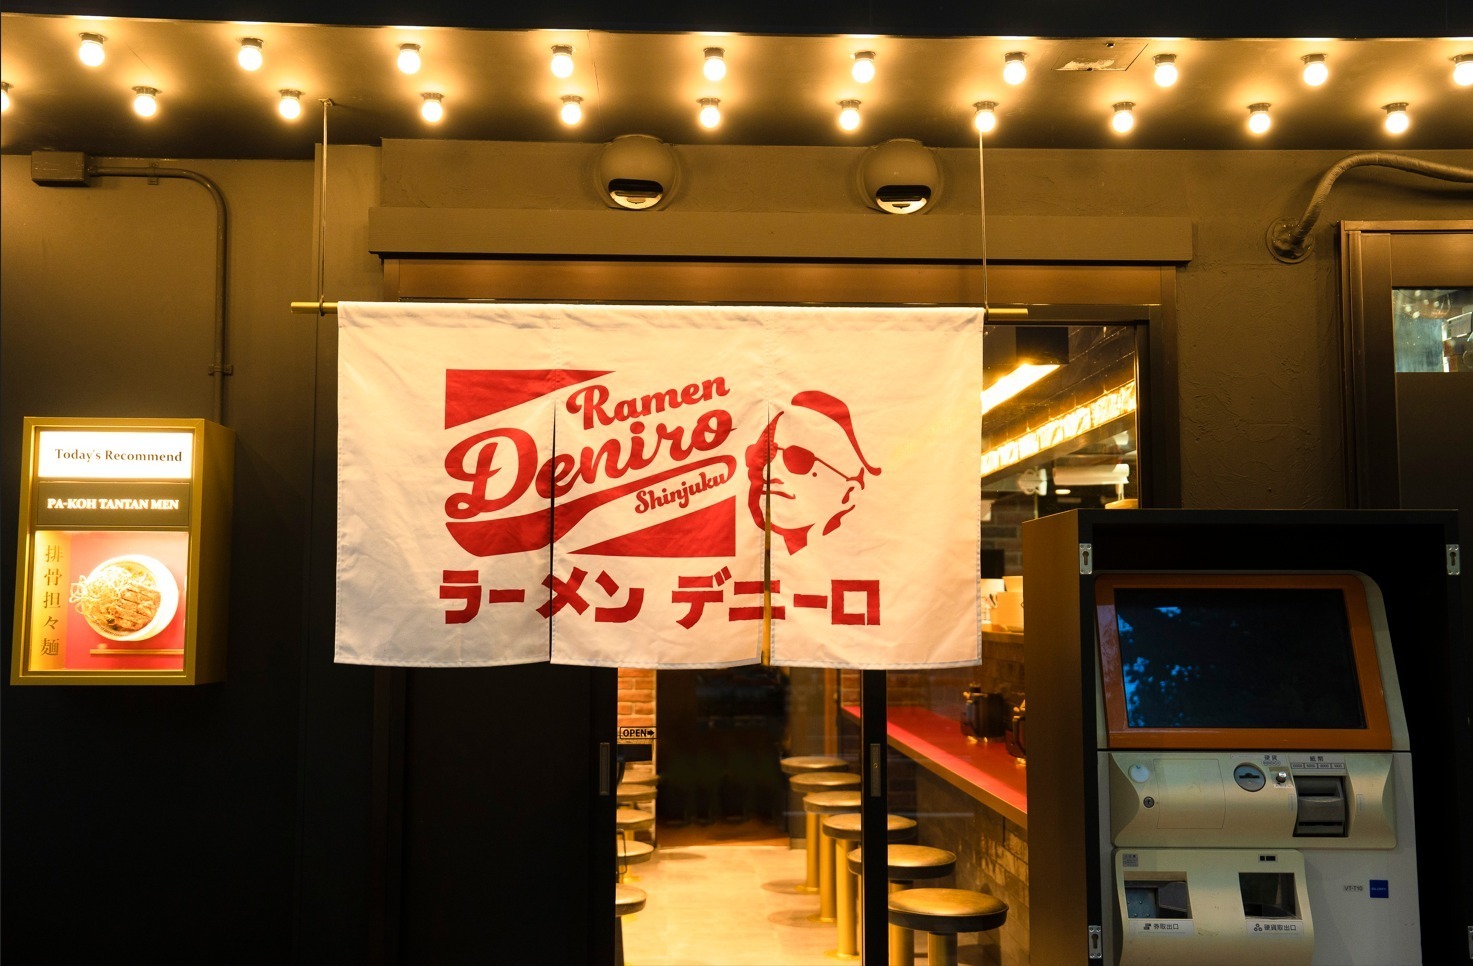 Ramen Deniro in Shinjuku, Tokyo